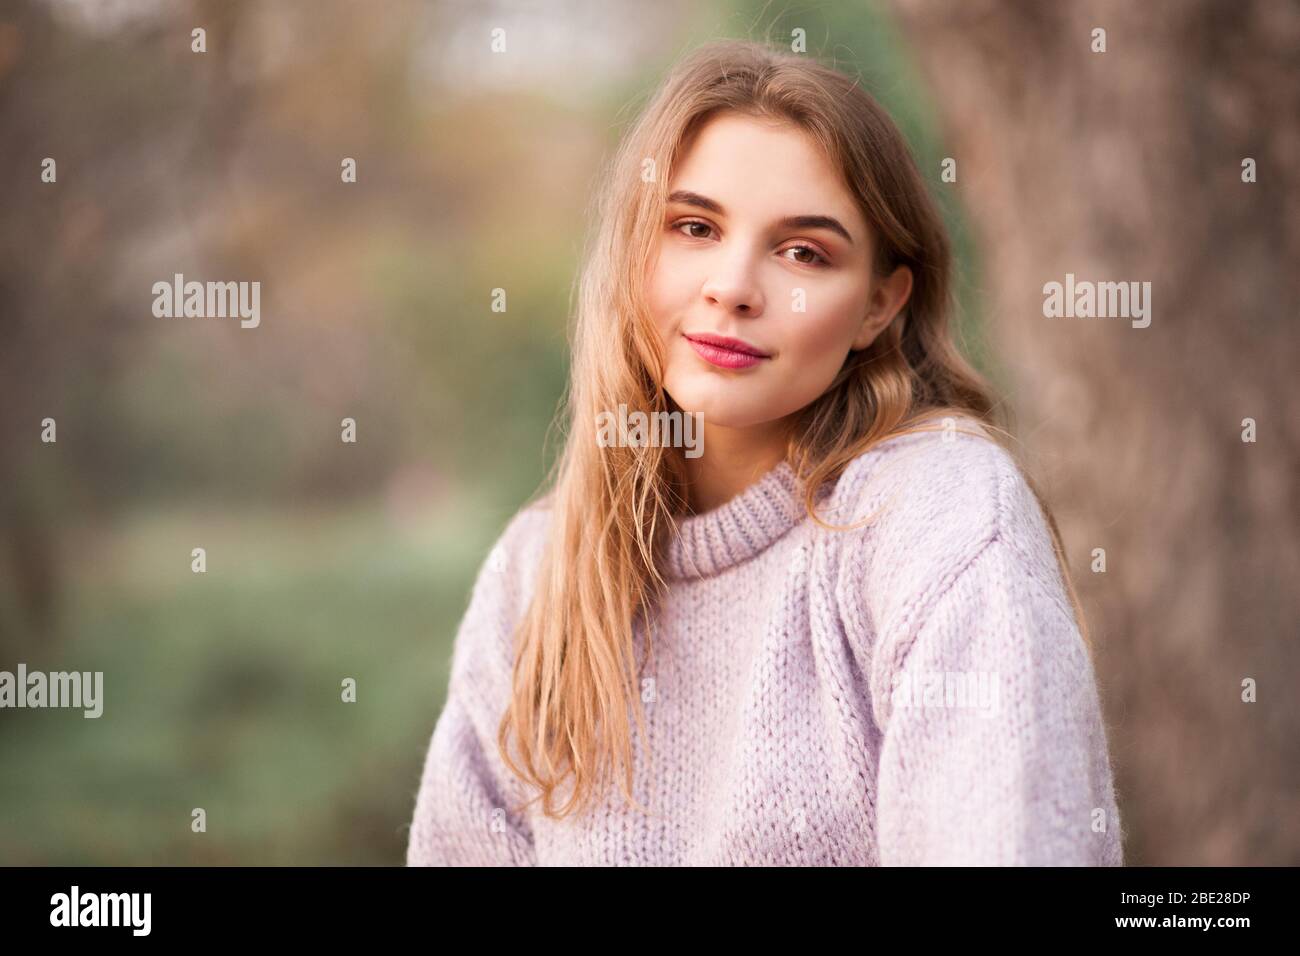 Schöne blonde Teenager-Mädchen 16-18 Jahre alt trägt Strickpullover posiert im Freien über Natur Hintergrund. Betrachten der Kamera. Frühjahrssaison. Stockfoto